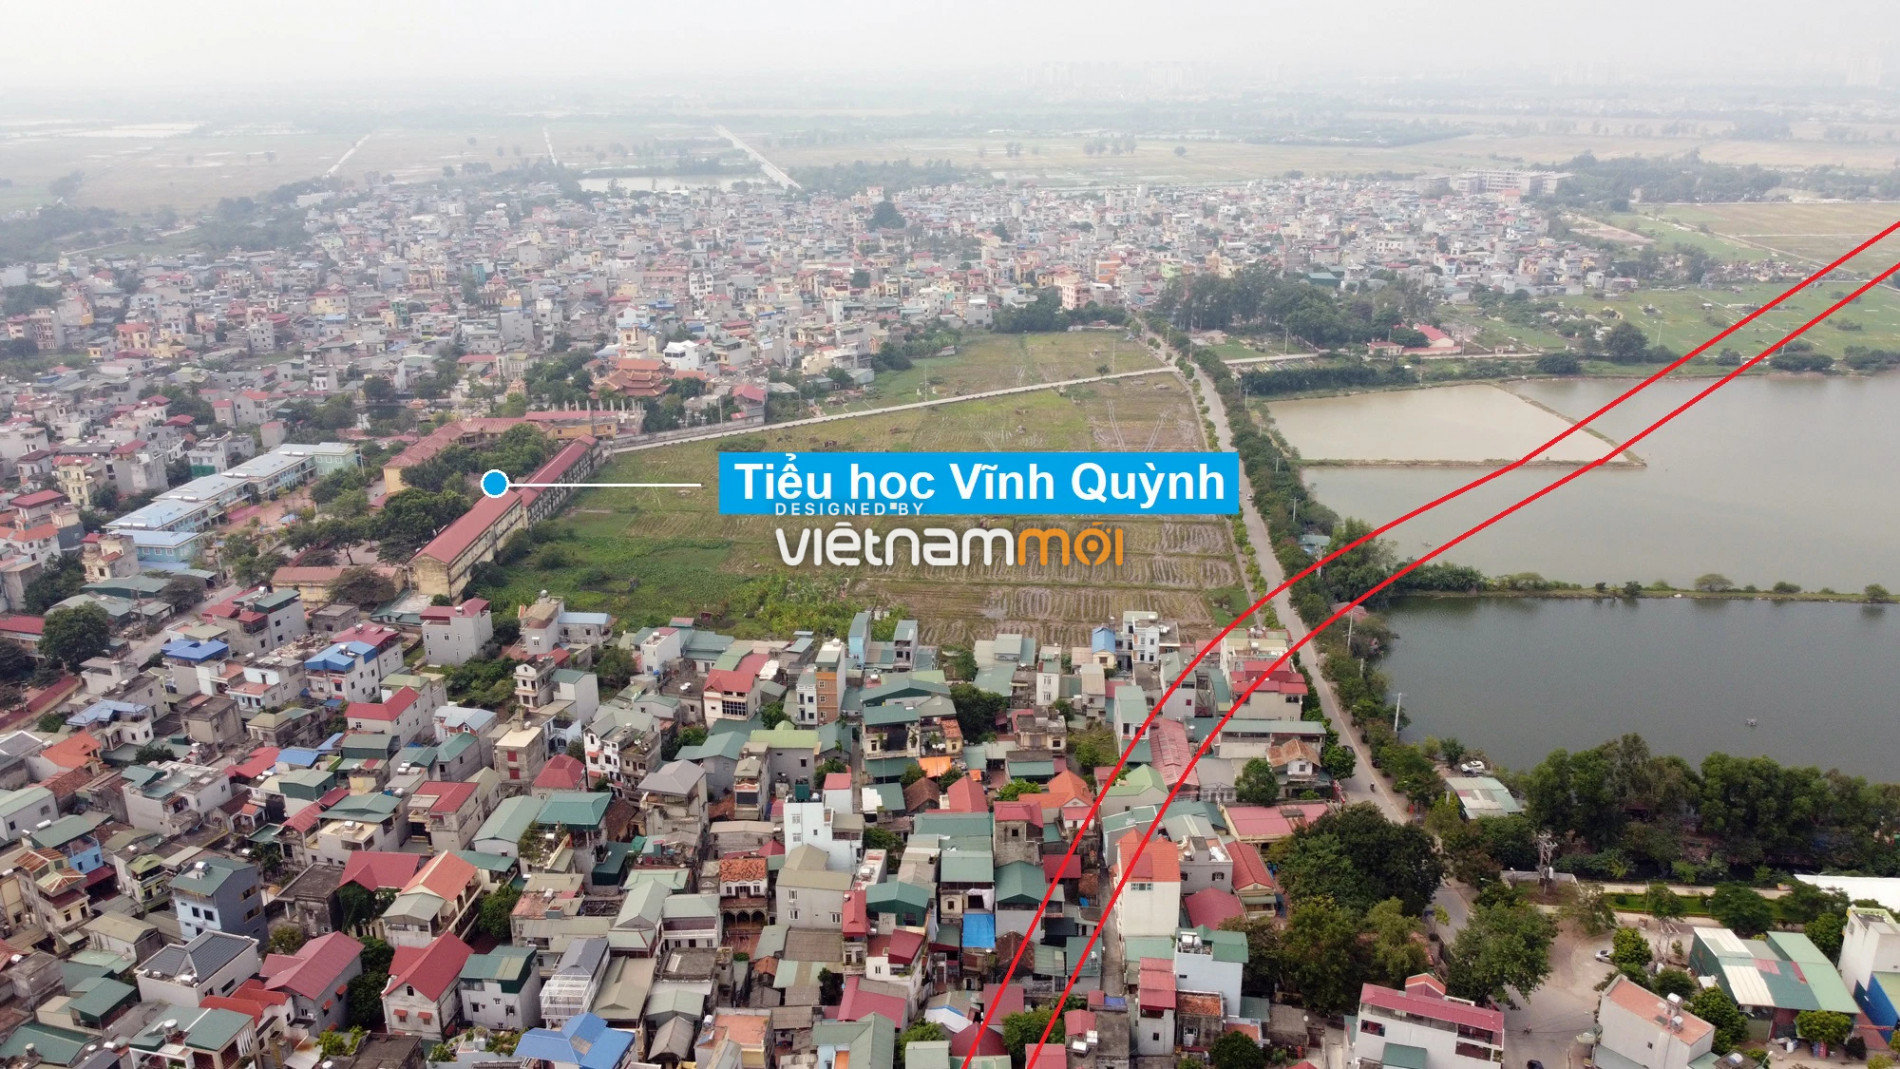 Những khu đất sắp thu hồi để mở đường ở xã Vĩnh Quỳnh, Thanh Trì, Hà Nội (phần 3) - Ảnh 13.